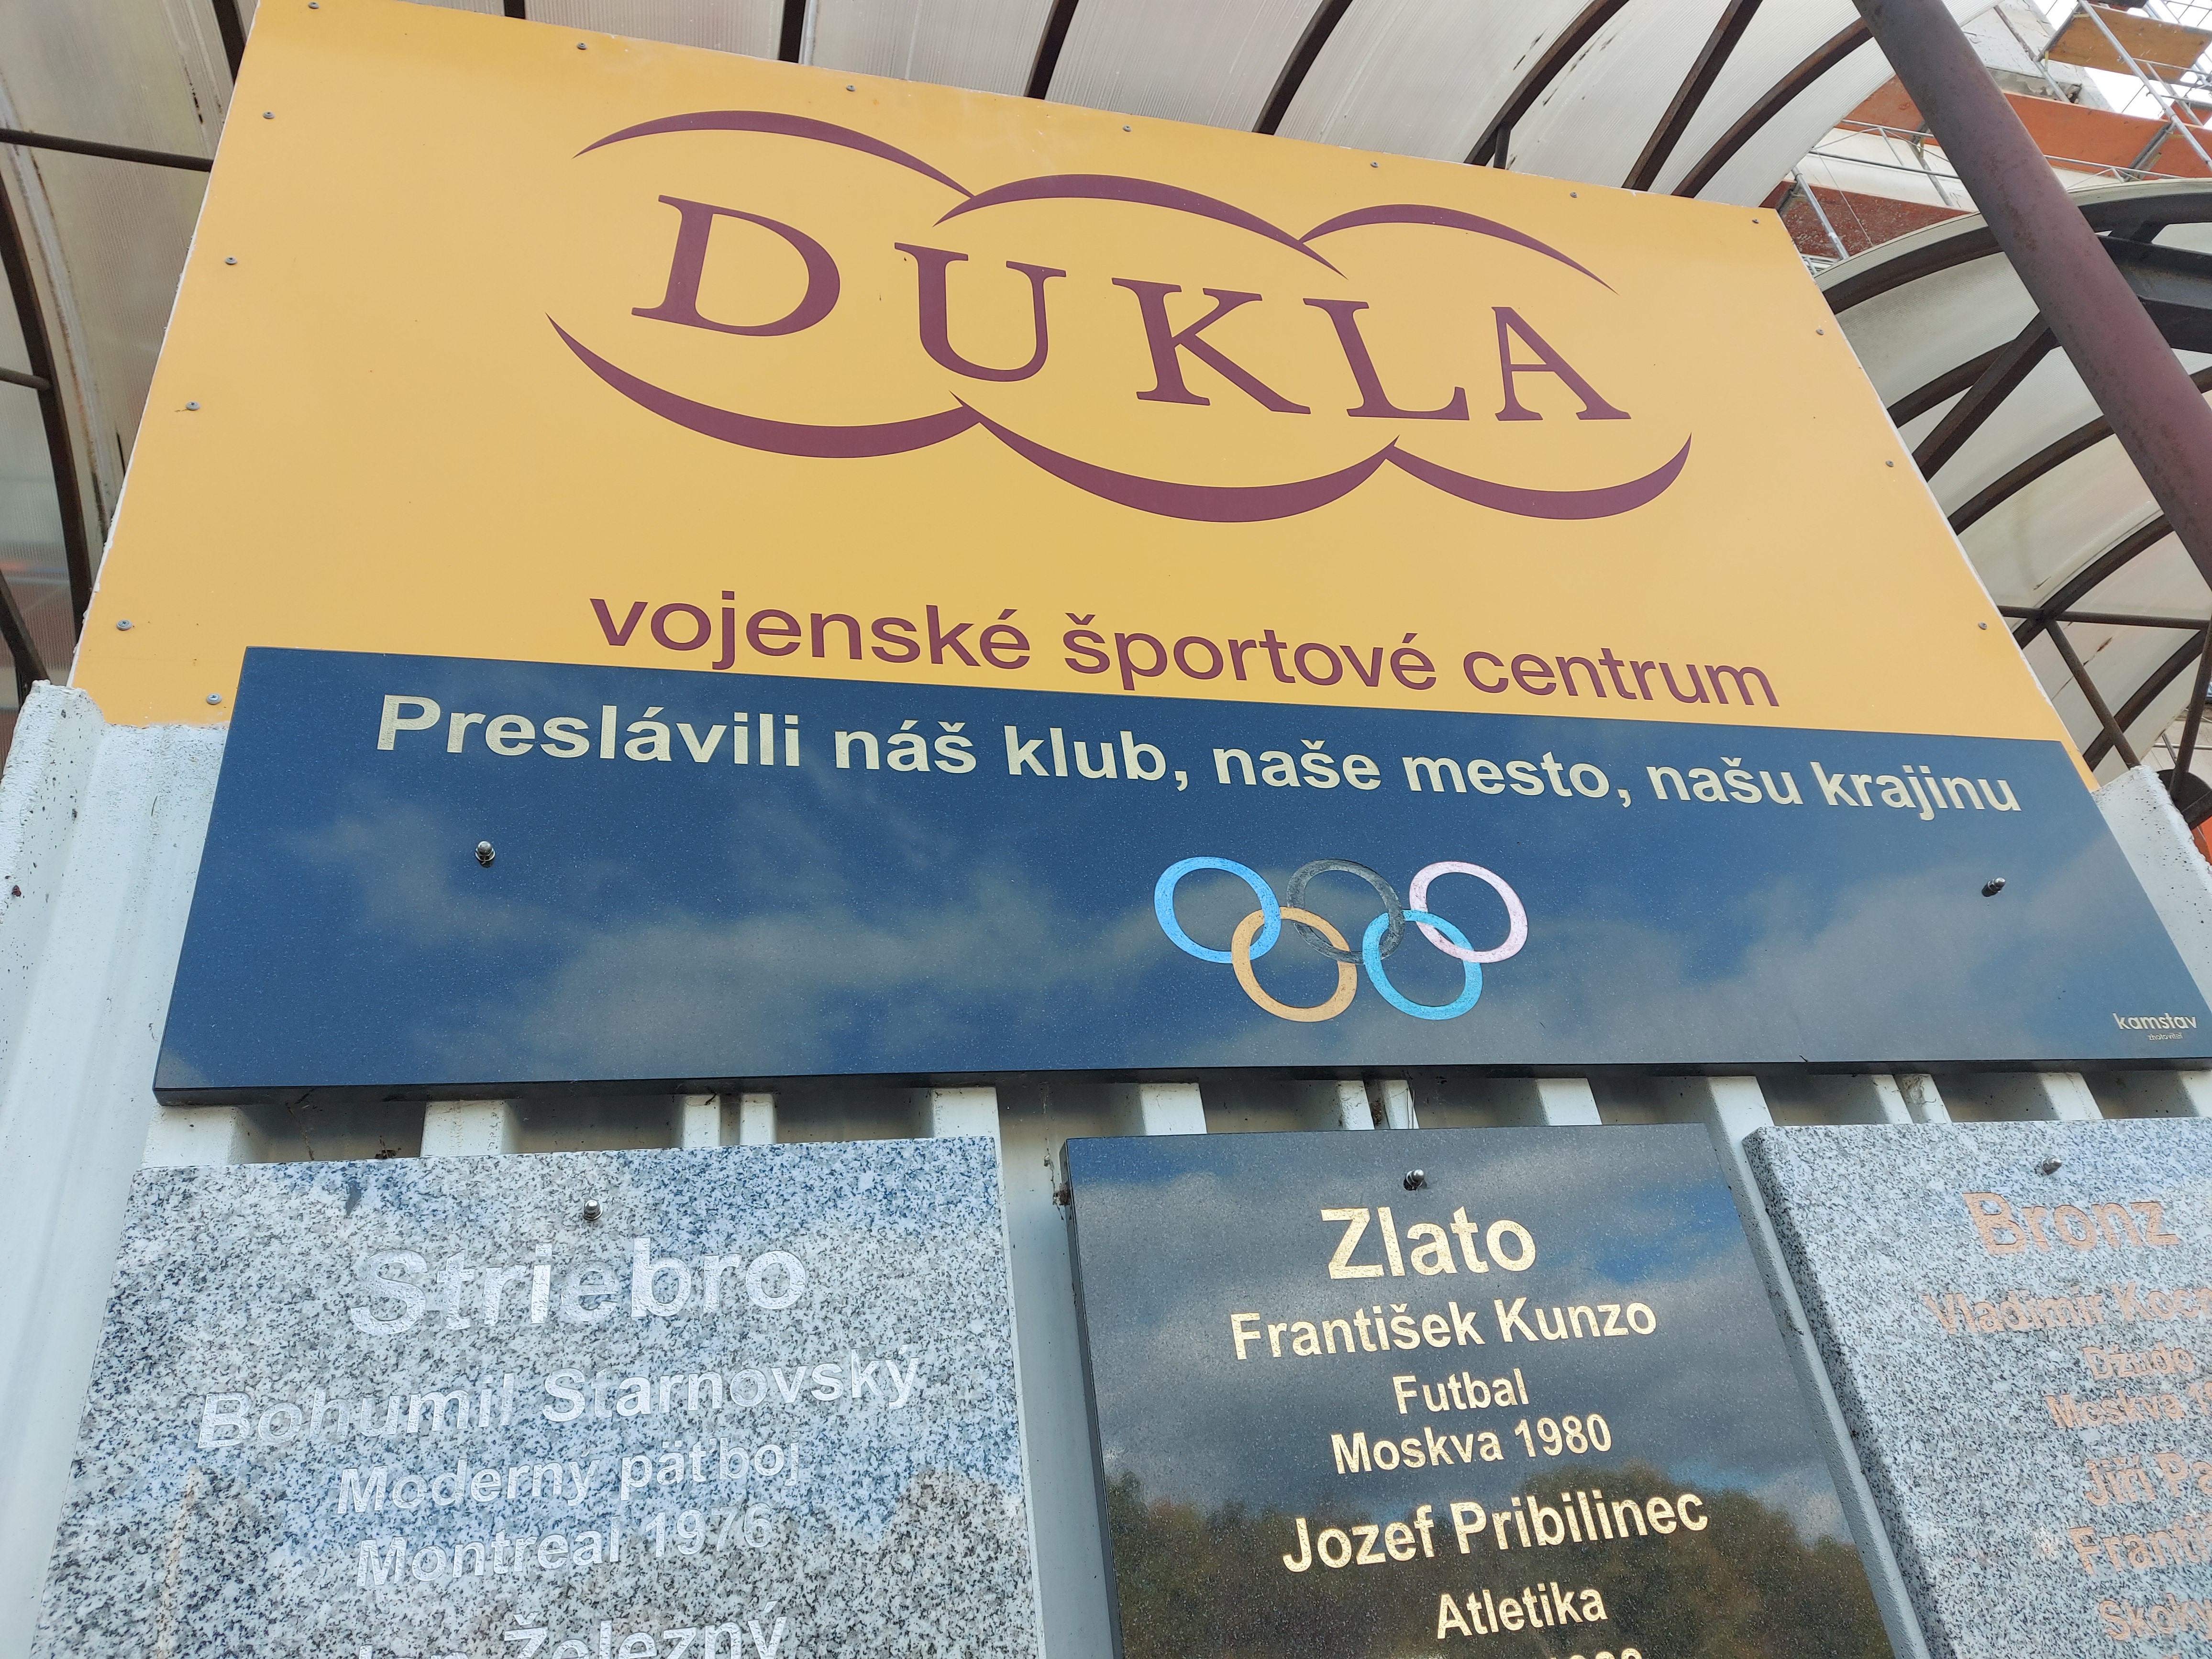 Petra Vlhová bude ako olympijská víťazka dopísaná na túto stenu slávy